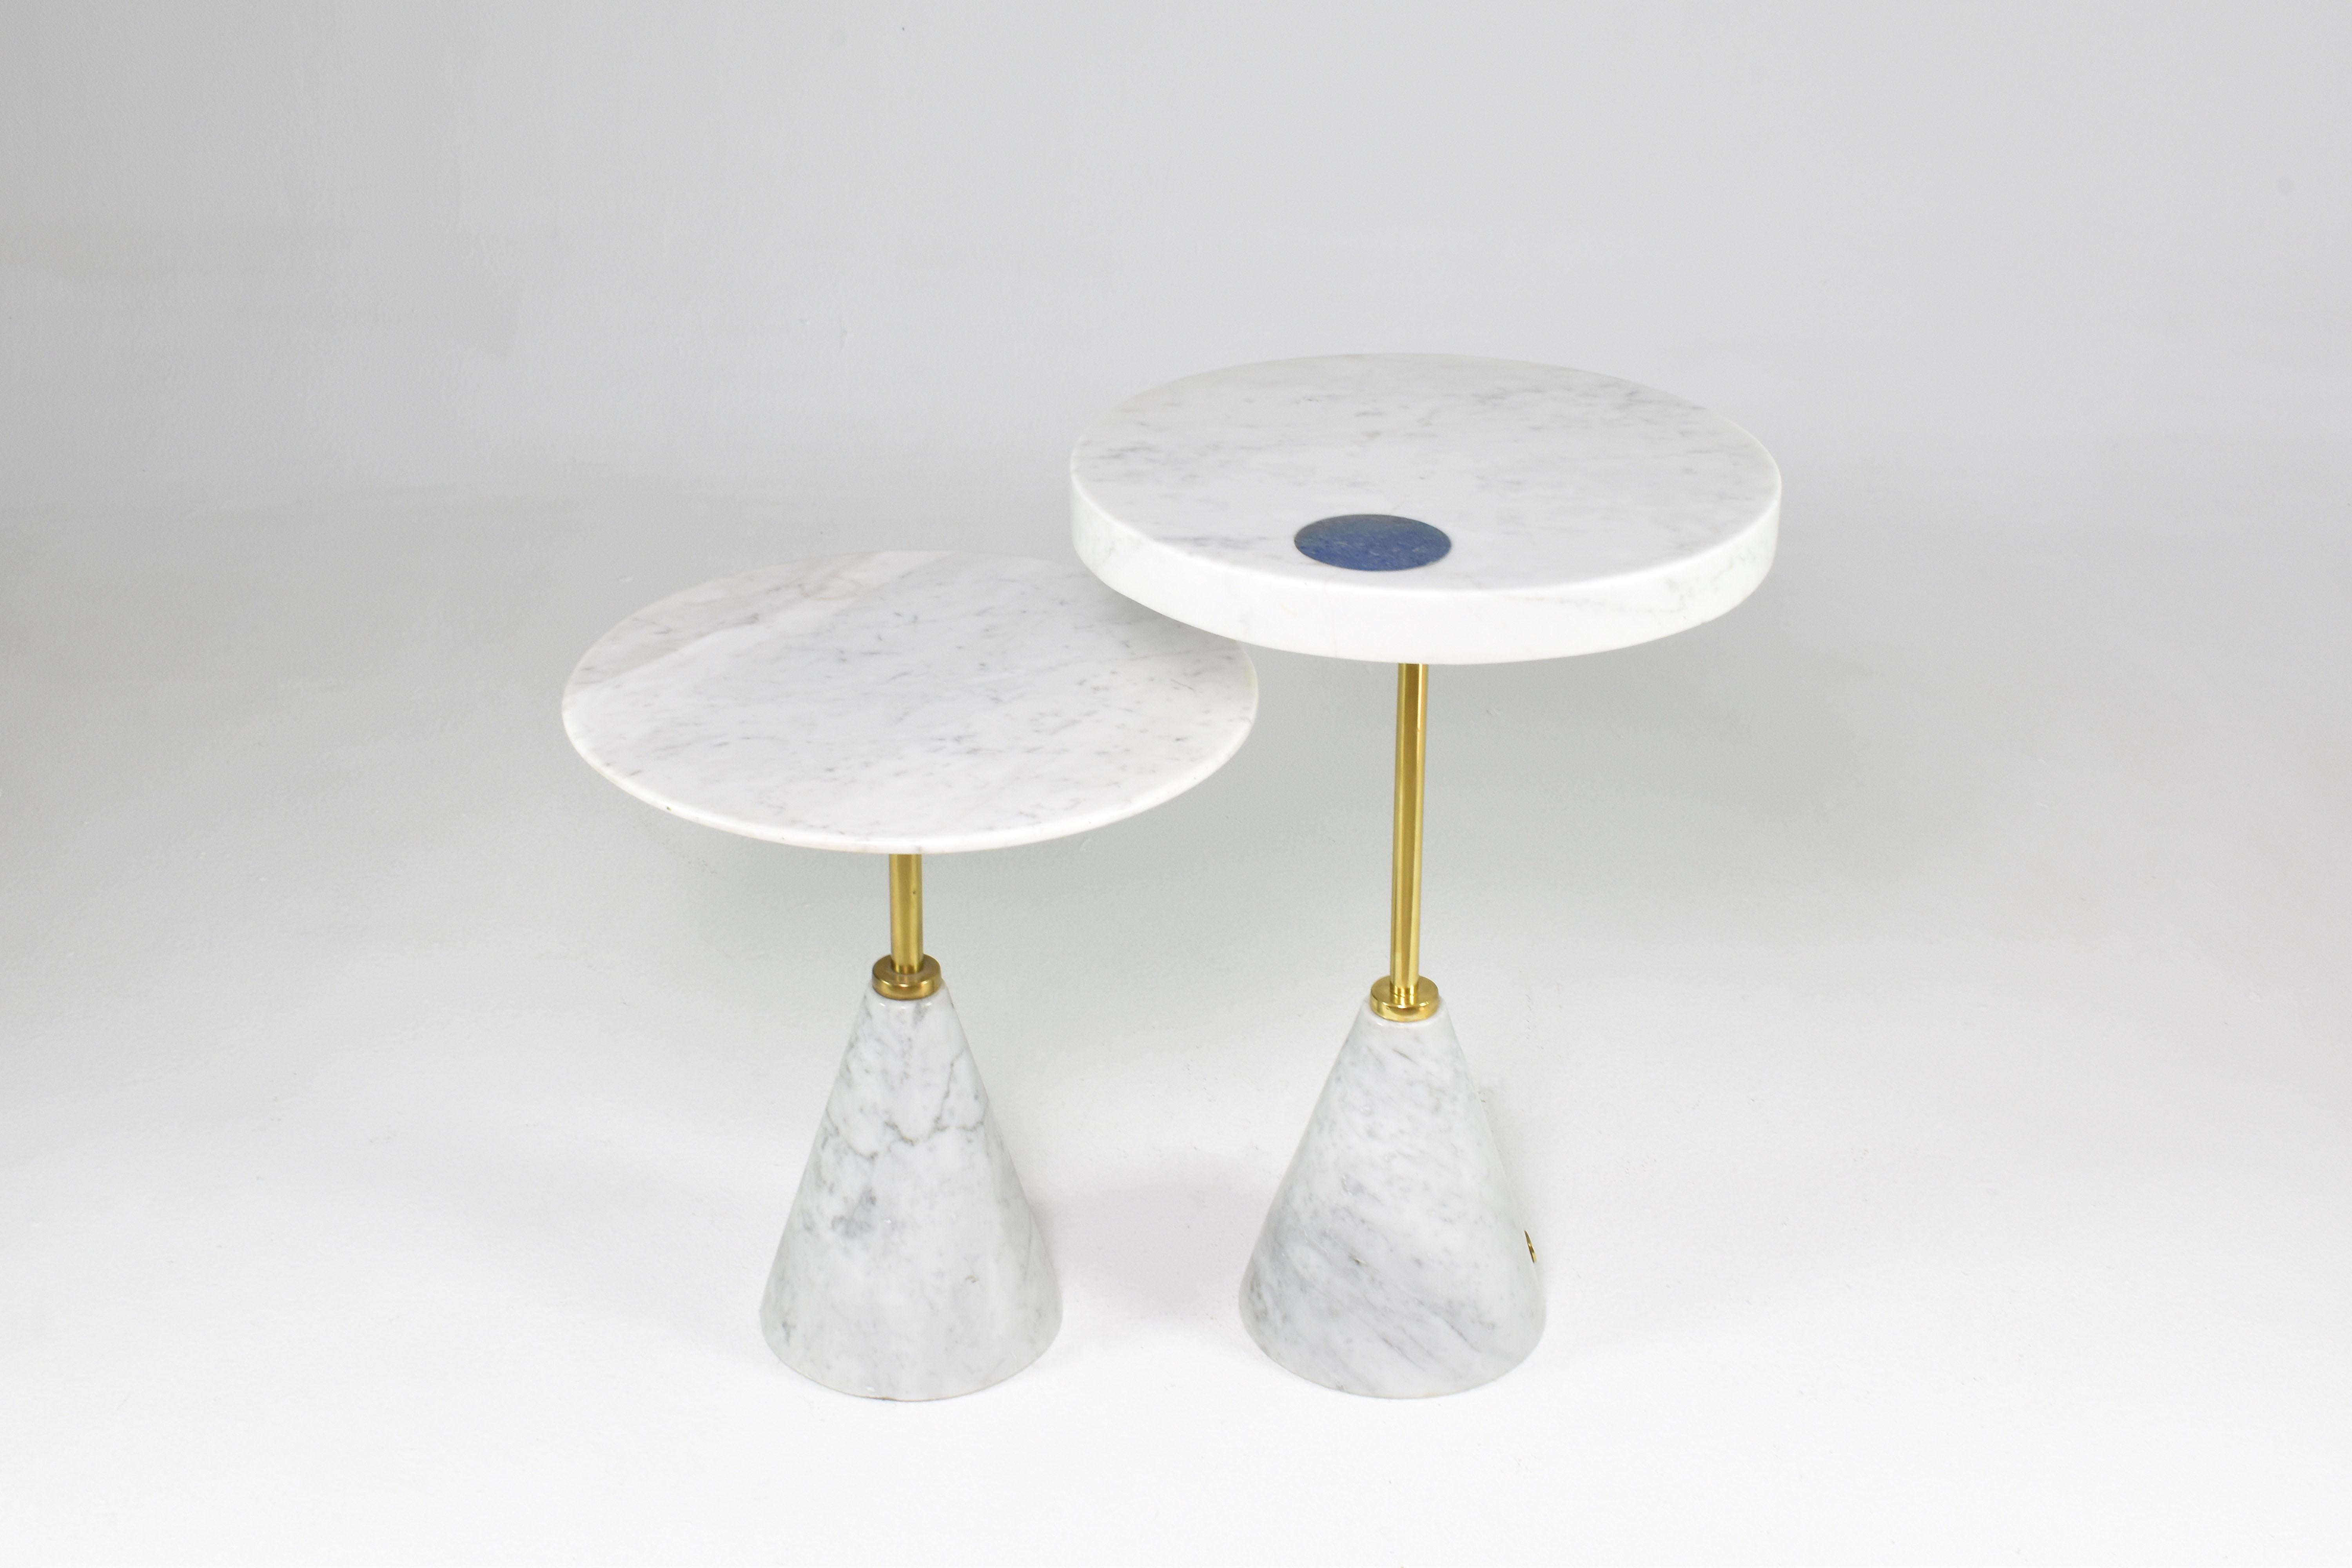 Paire de tables d'appoint contemporaines en forme de guéridon conçues par Jonathan Amar et fabriquées à la main en marbre de Carrare et en laiton. La table la plus haute, dont le plateau est plus épais, est ornée d'un superbe détail en lapis-lazuli